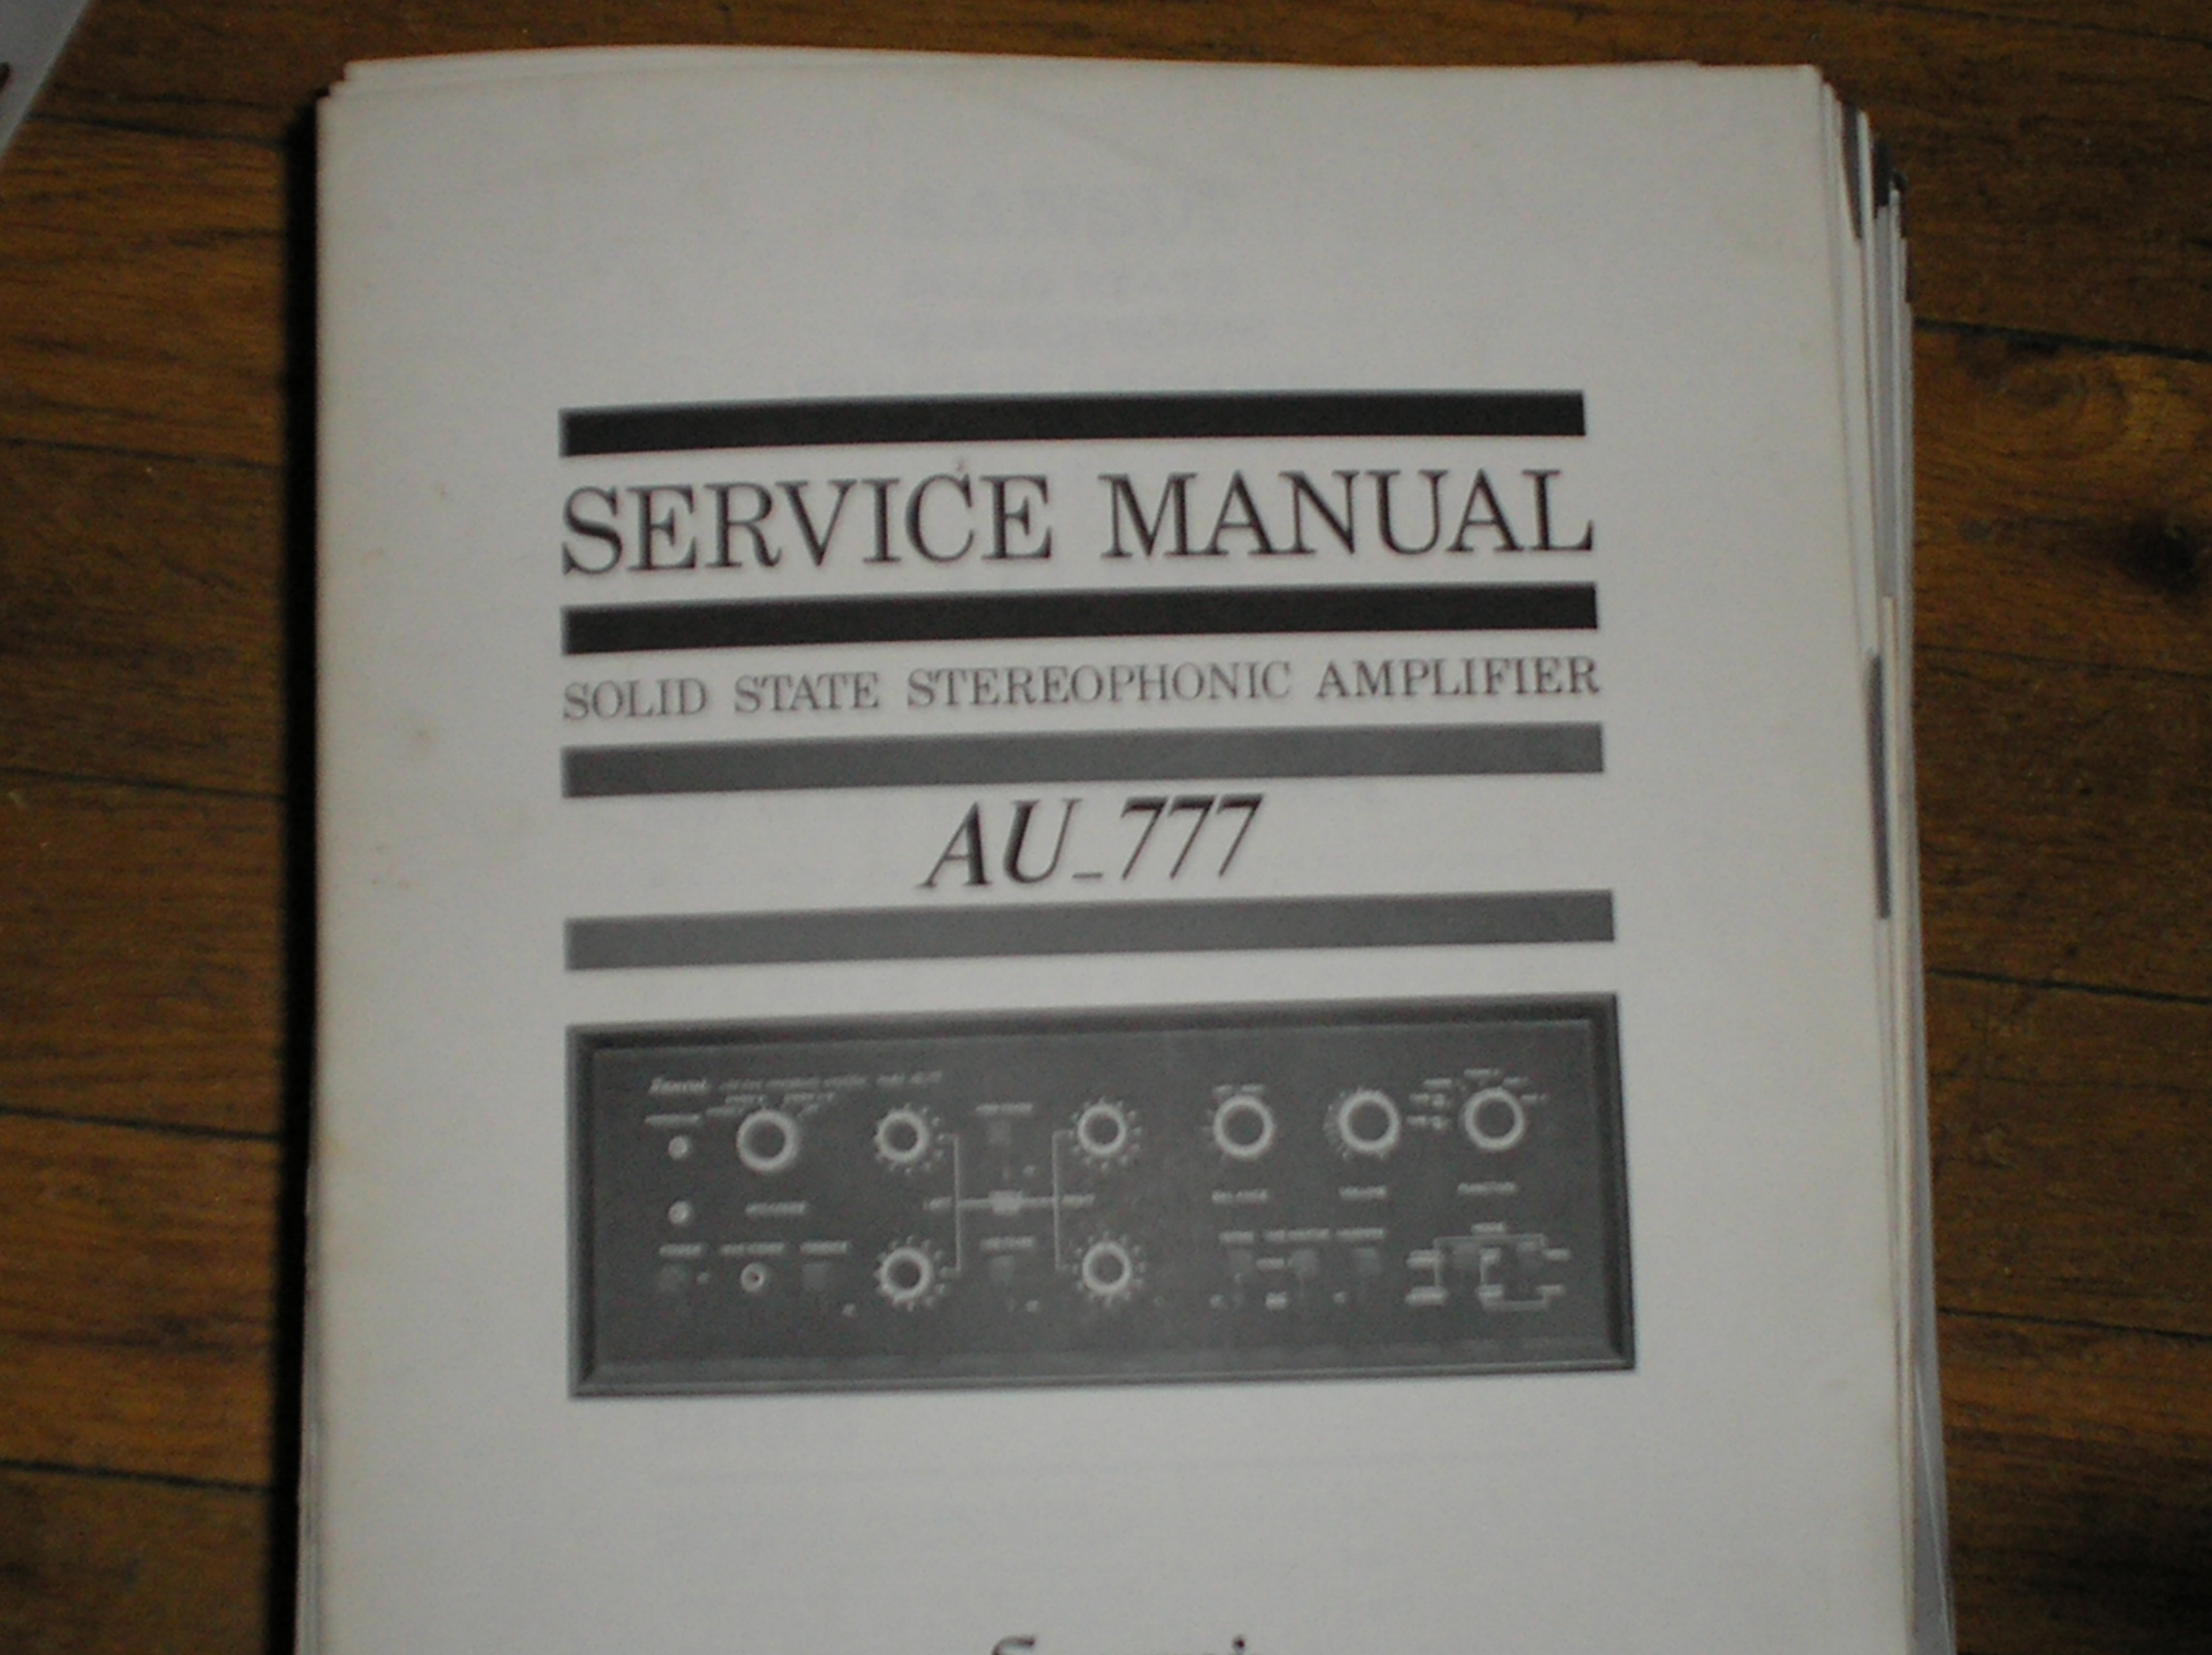 AU-777 Amplifier Service Manual